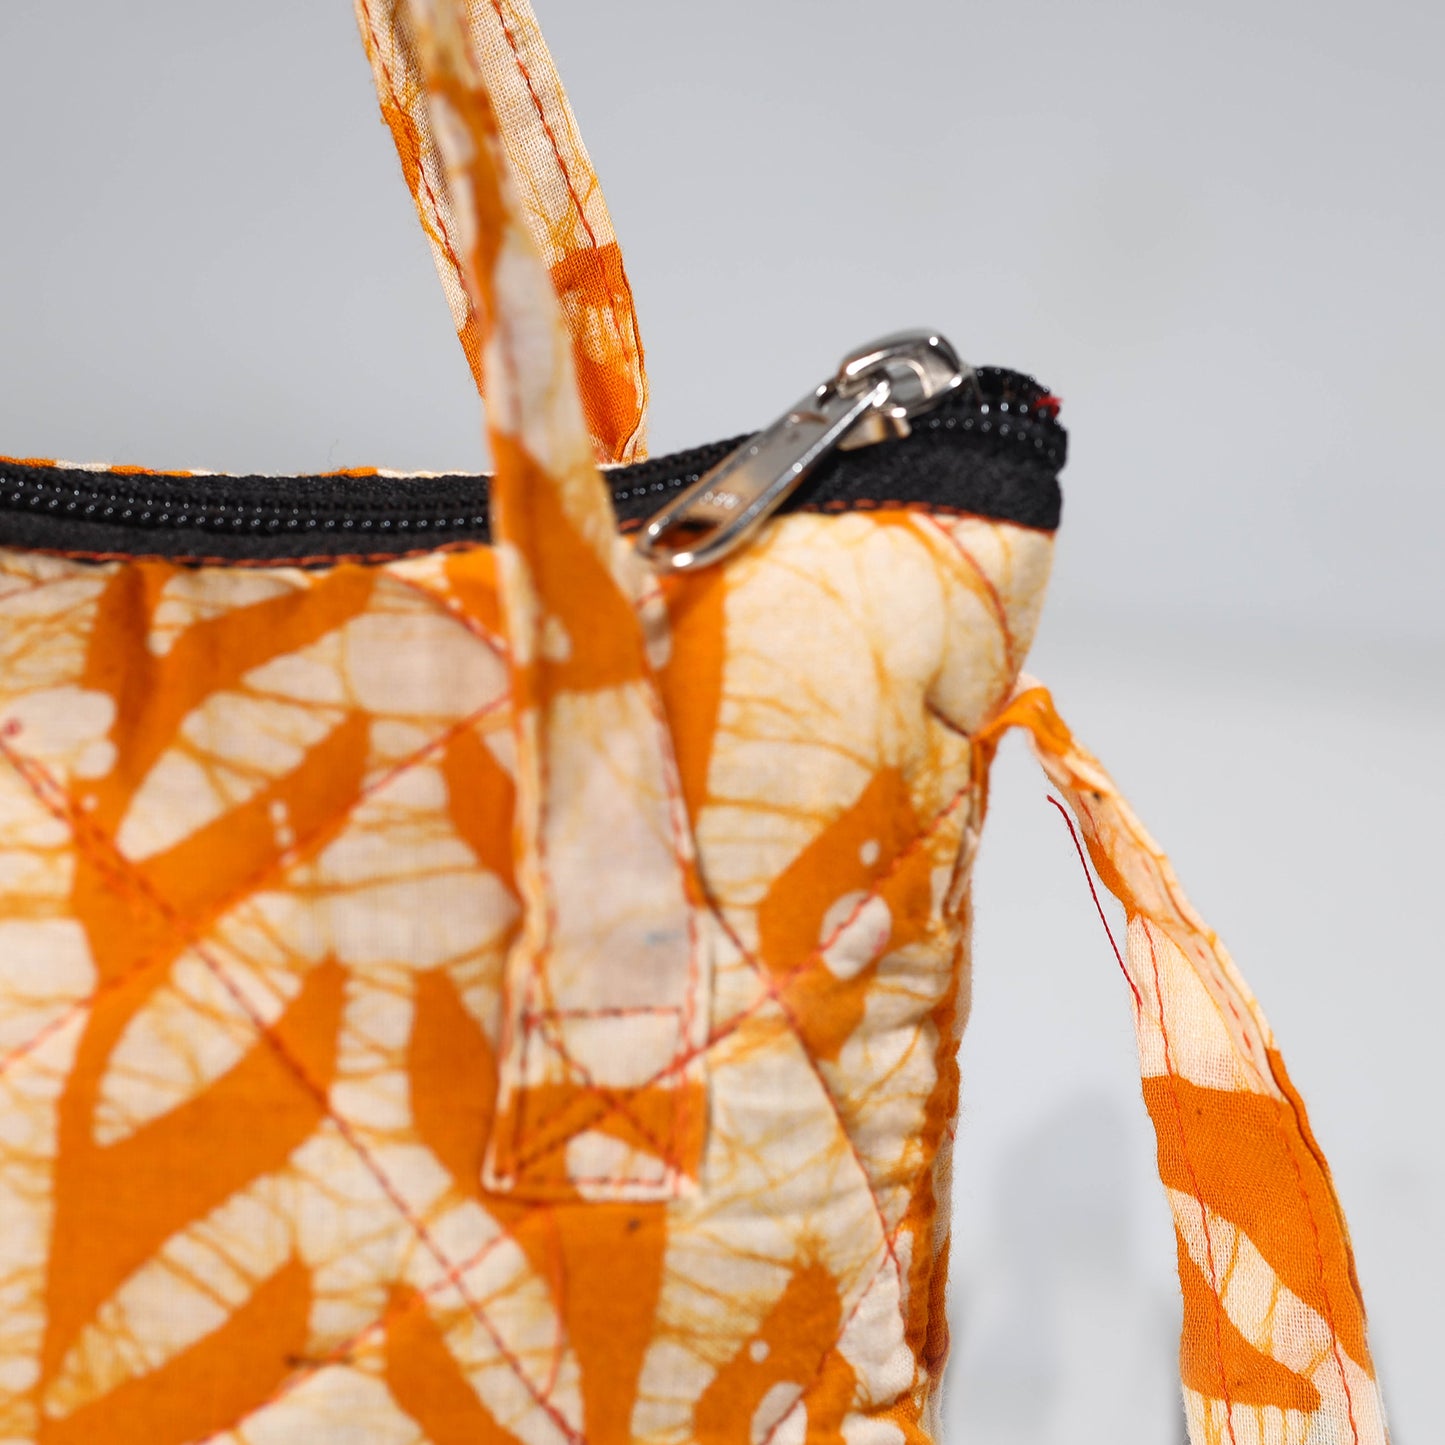 Orange - Hand Batik Printed Quilted Cotton Sling Bag 26